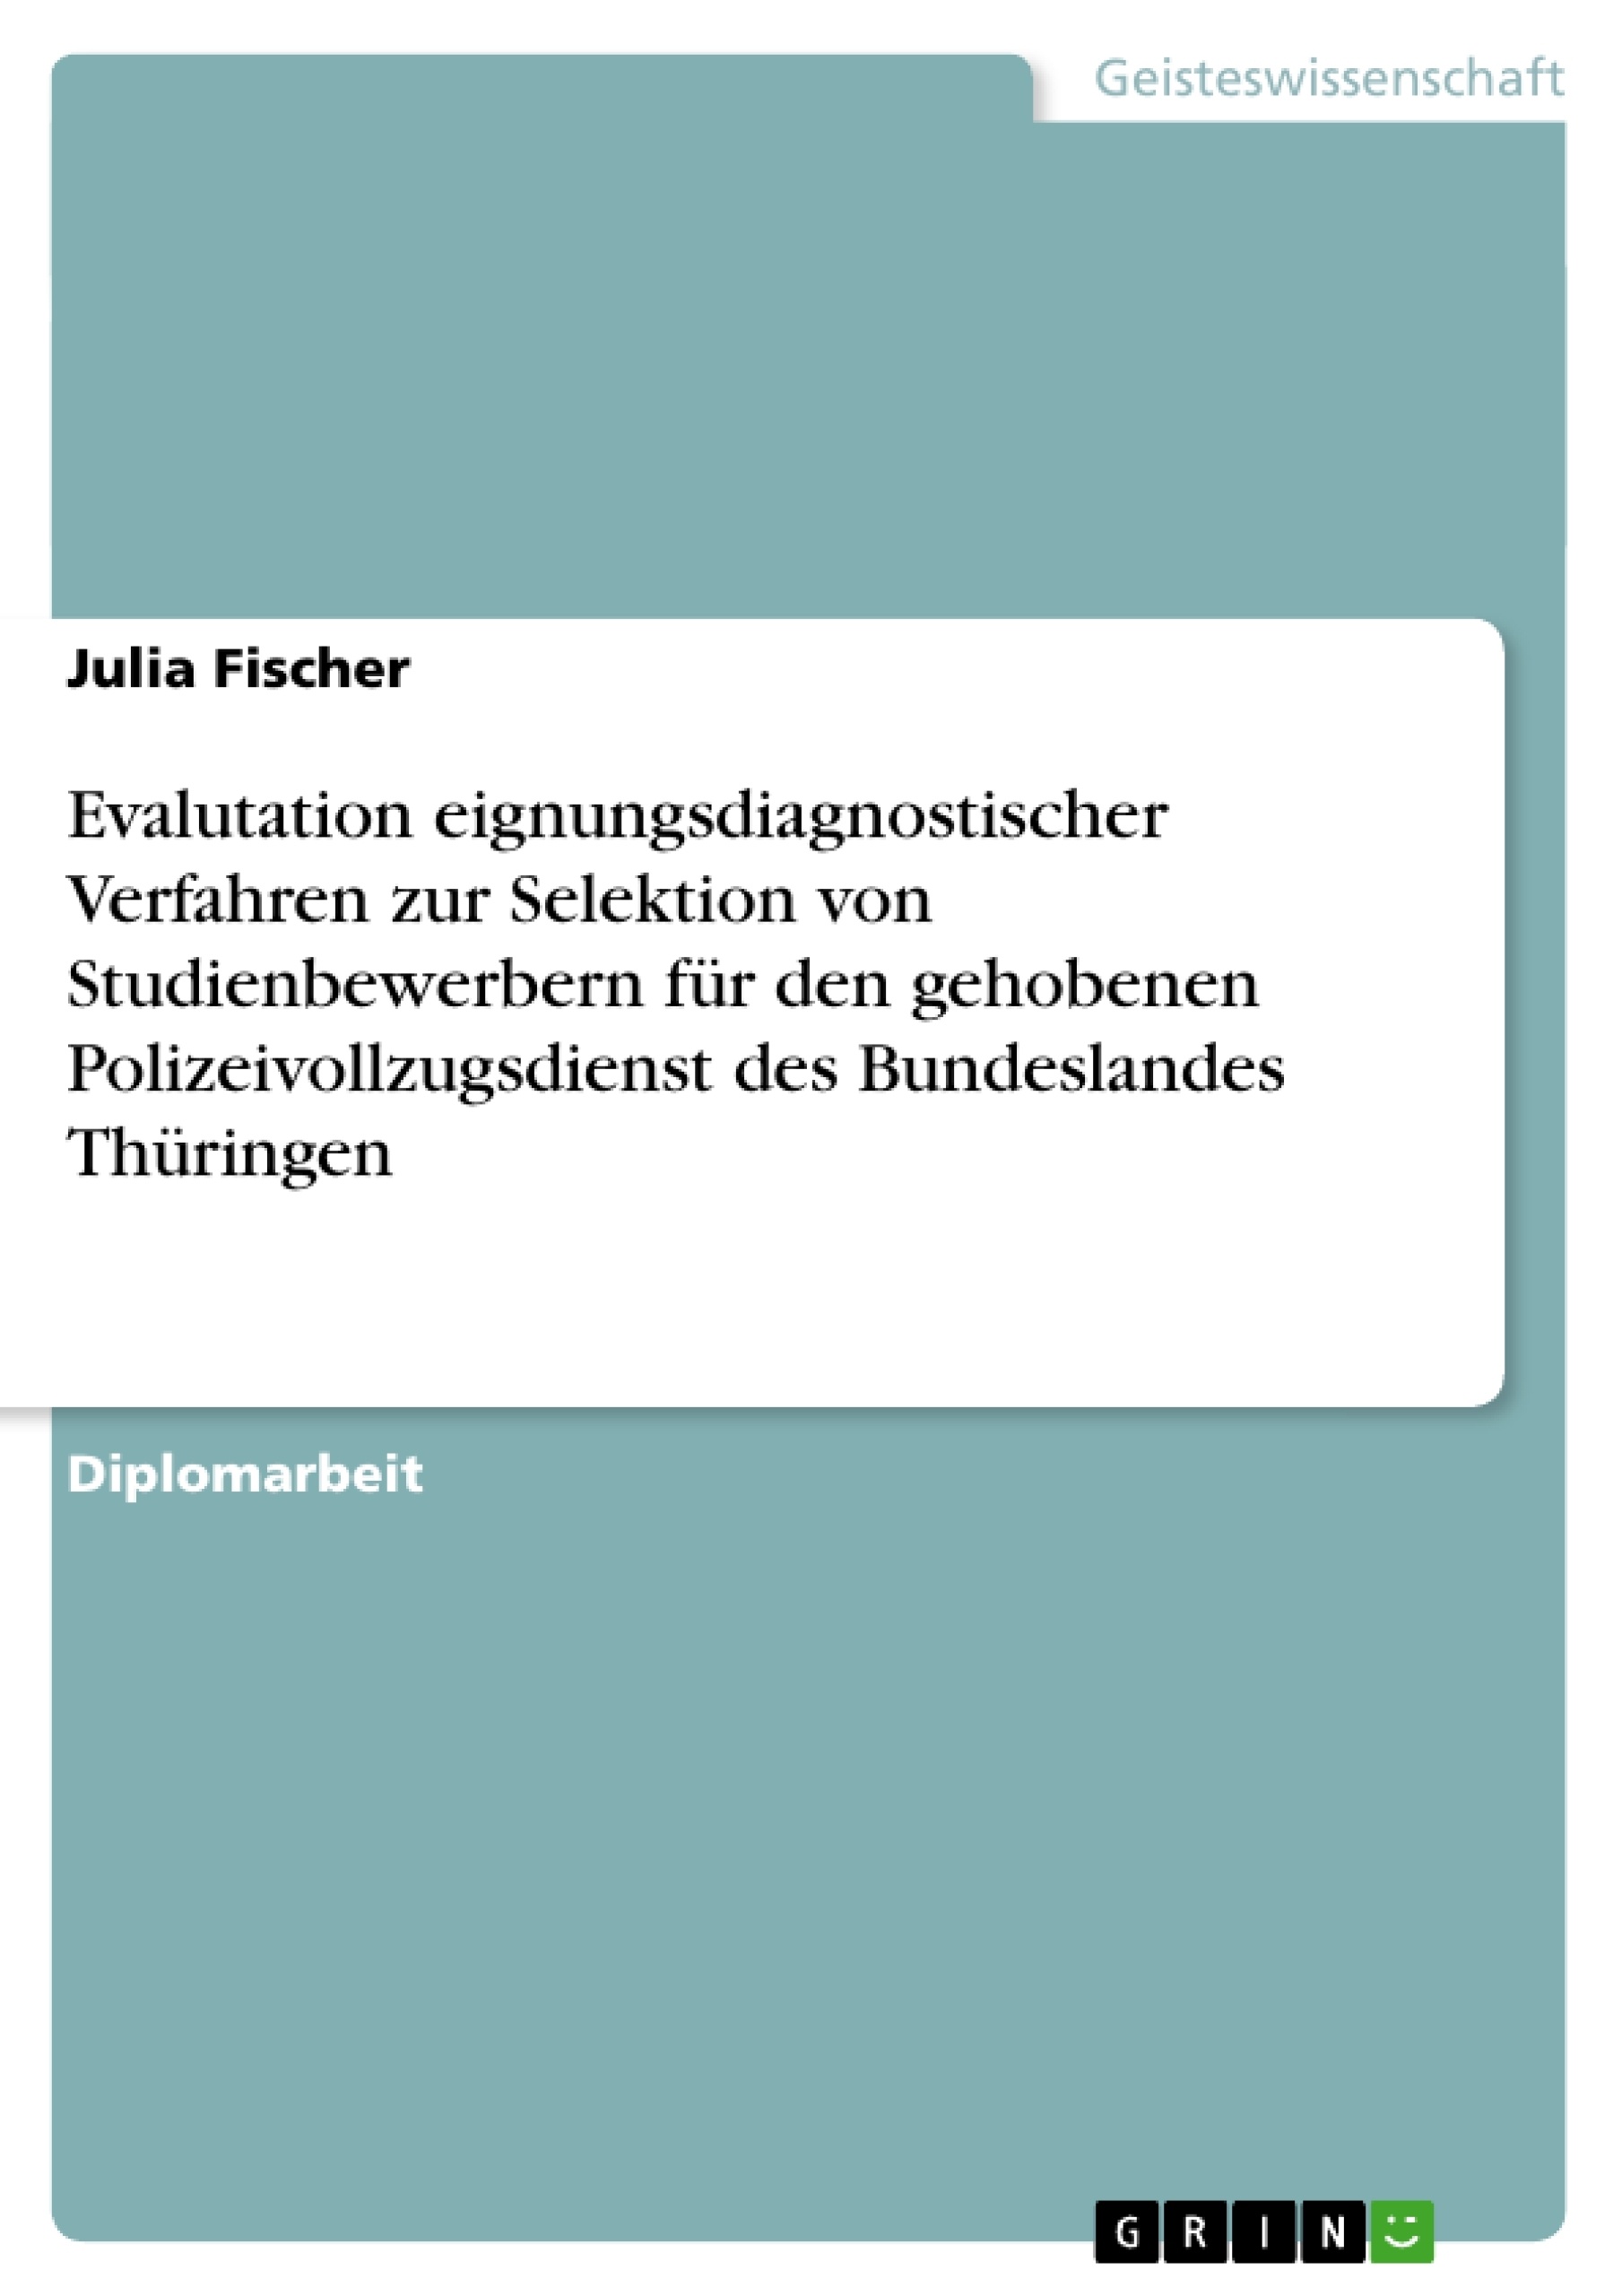 Titel: Evalutation eignungsdiagnostischer Verfahren zur Selektion von Studienbewerbern für den gehobenen Polizeivollzugsdienst des Bundeslandes Thüringen